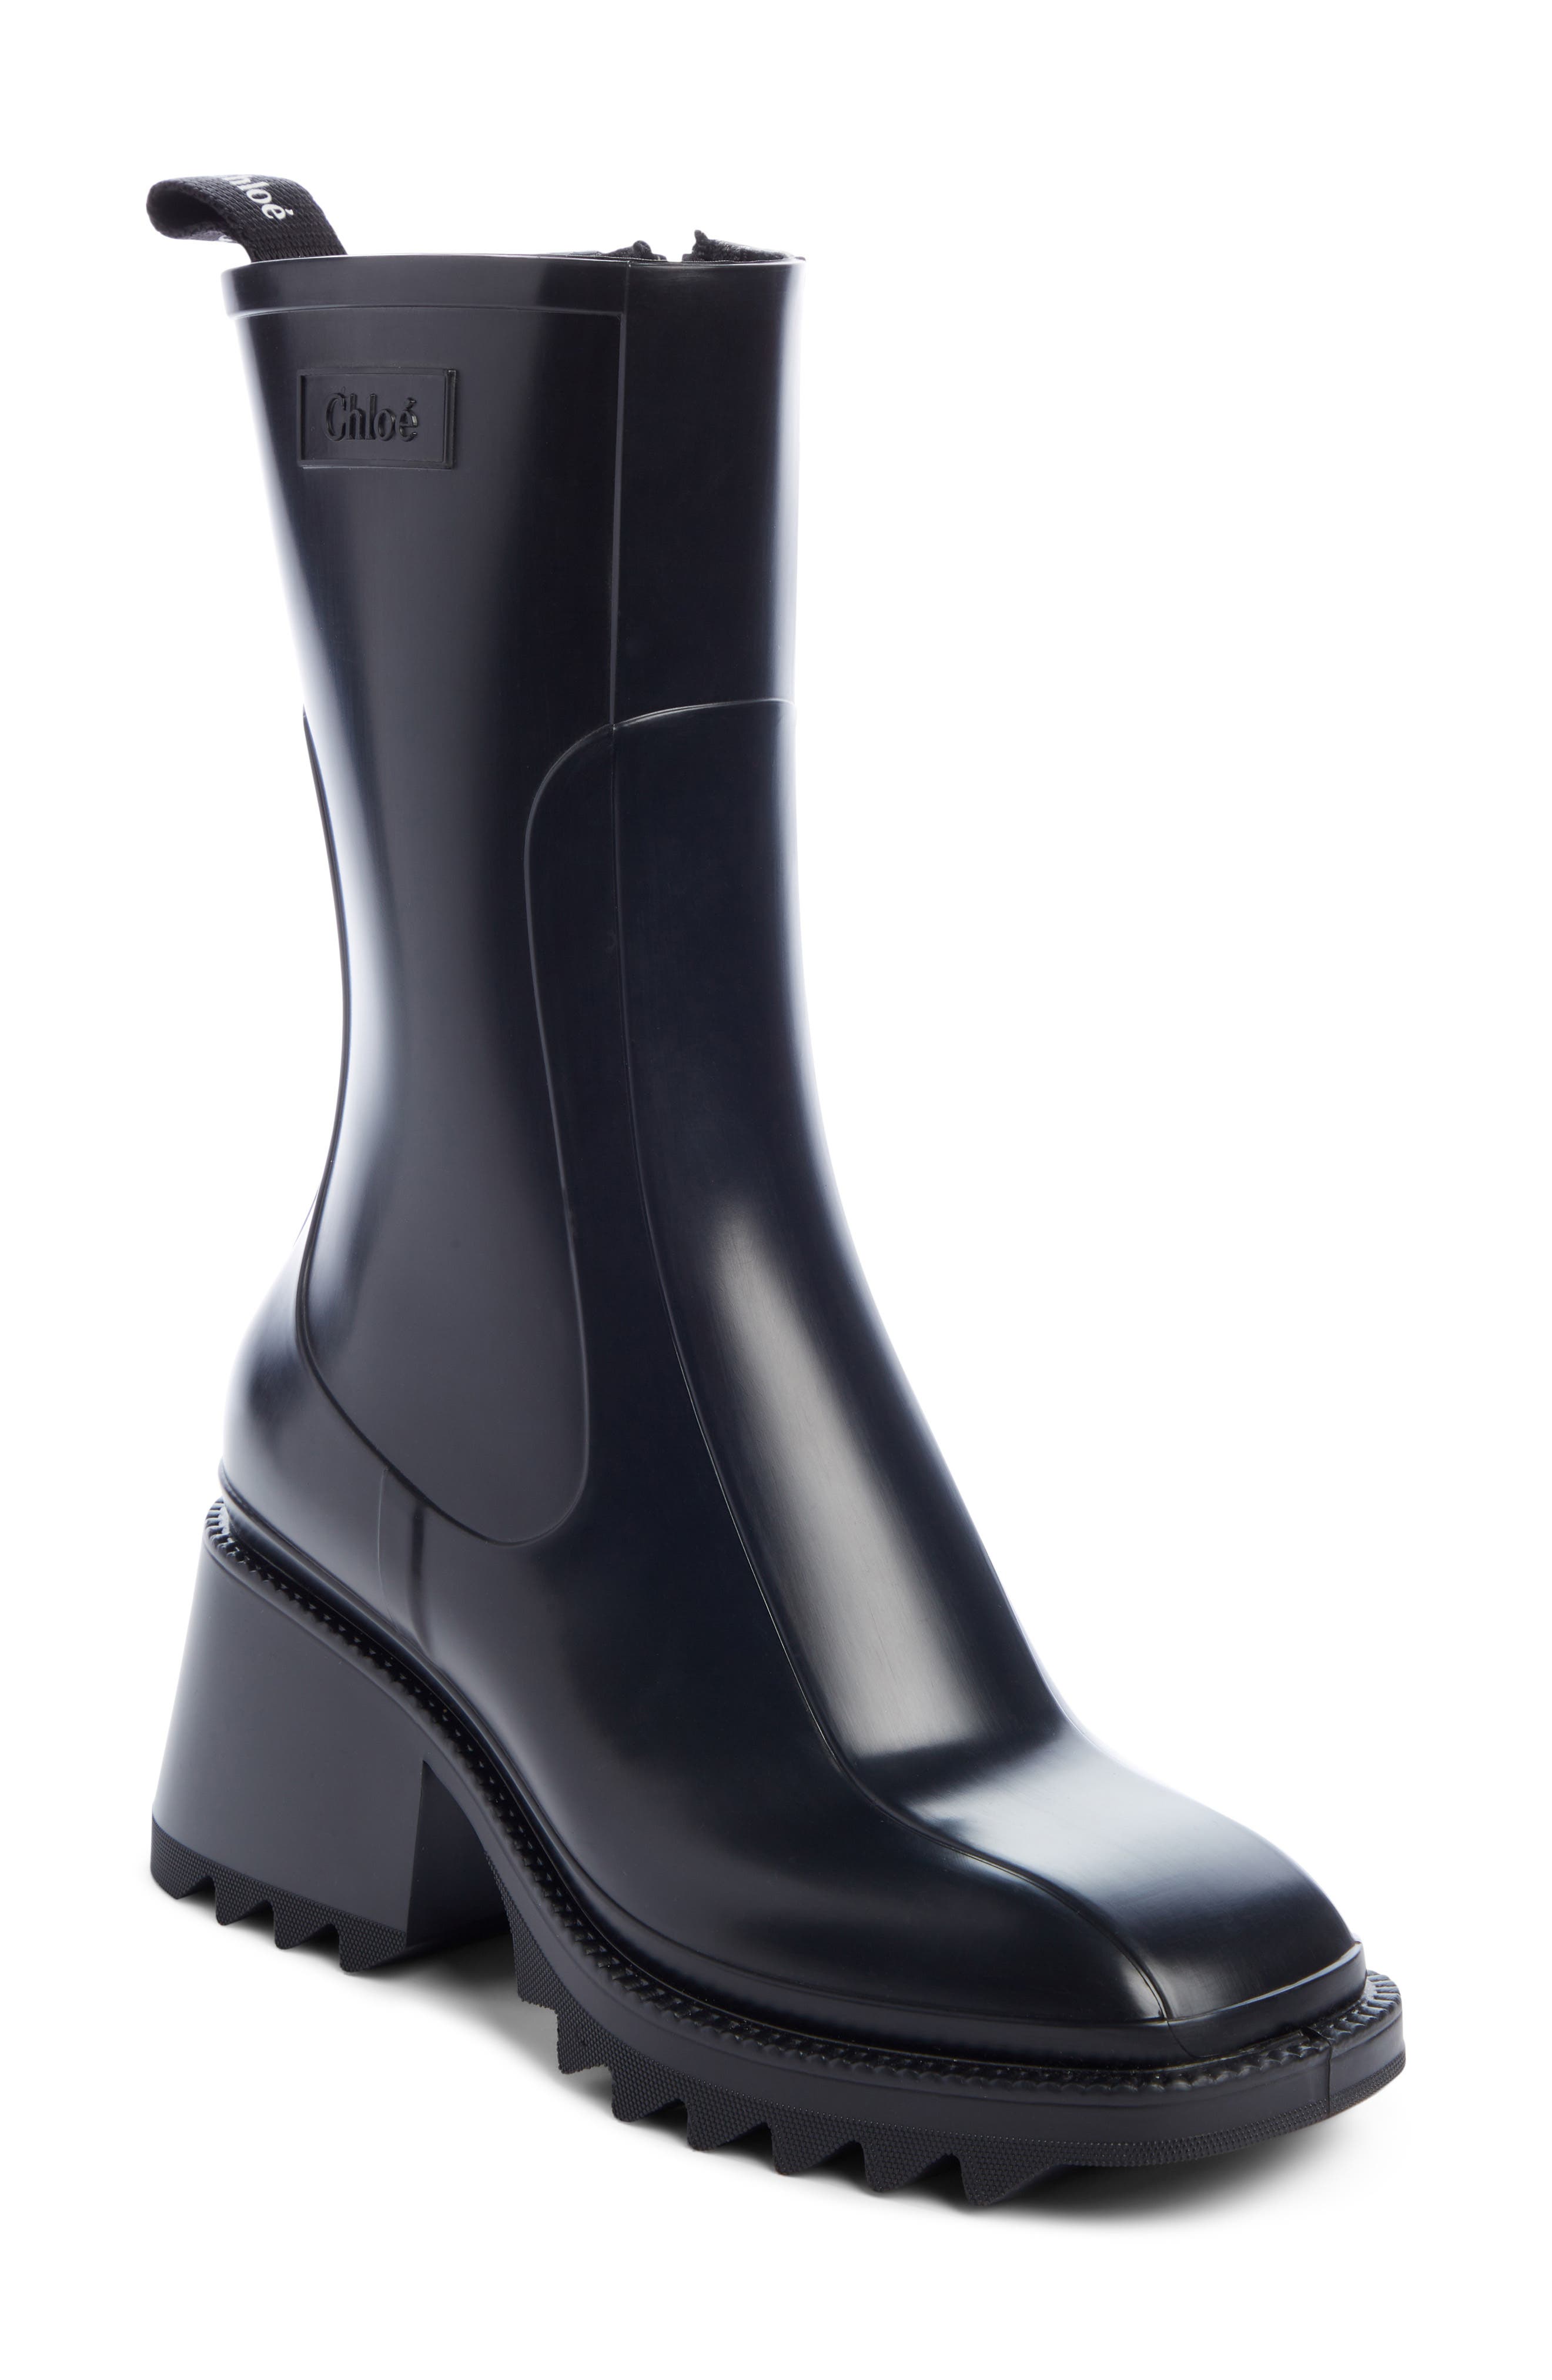 waterproof designer boots